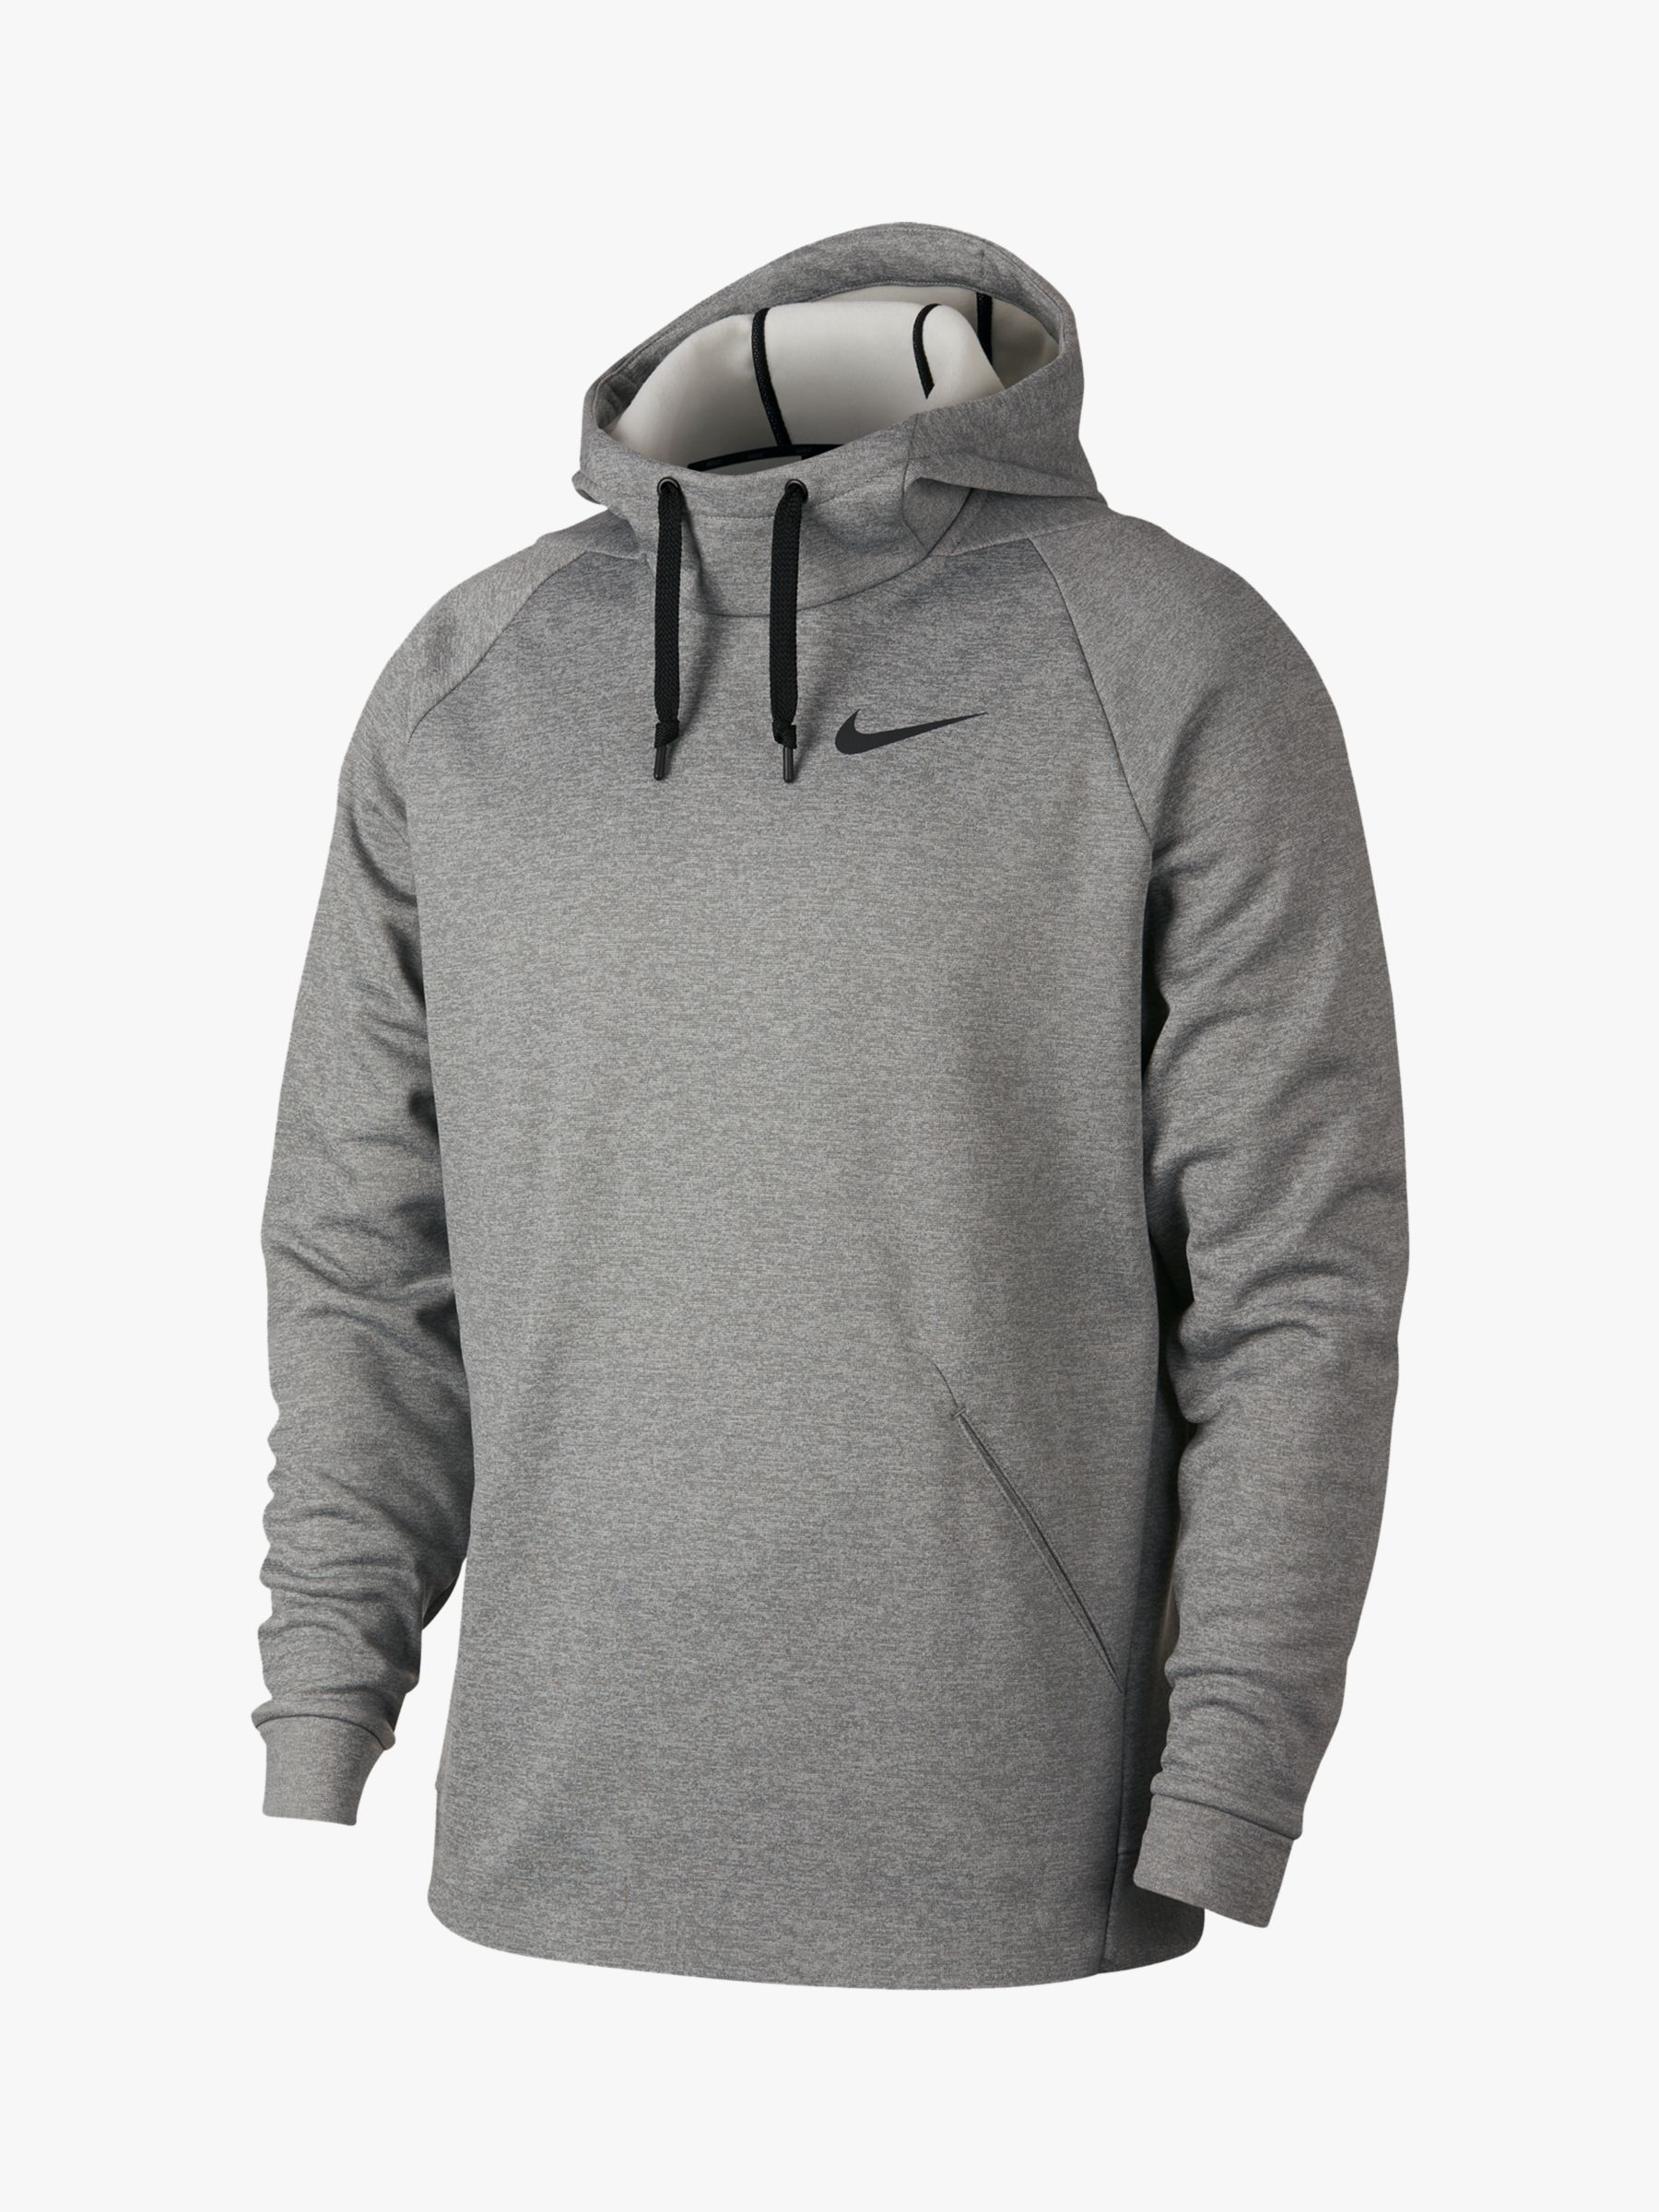 nike grey heather hoodie